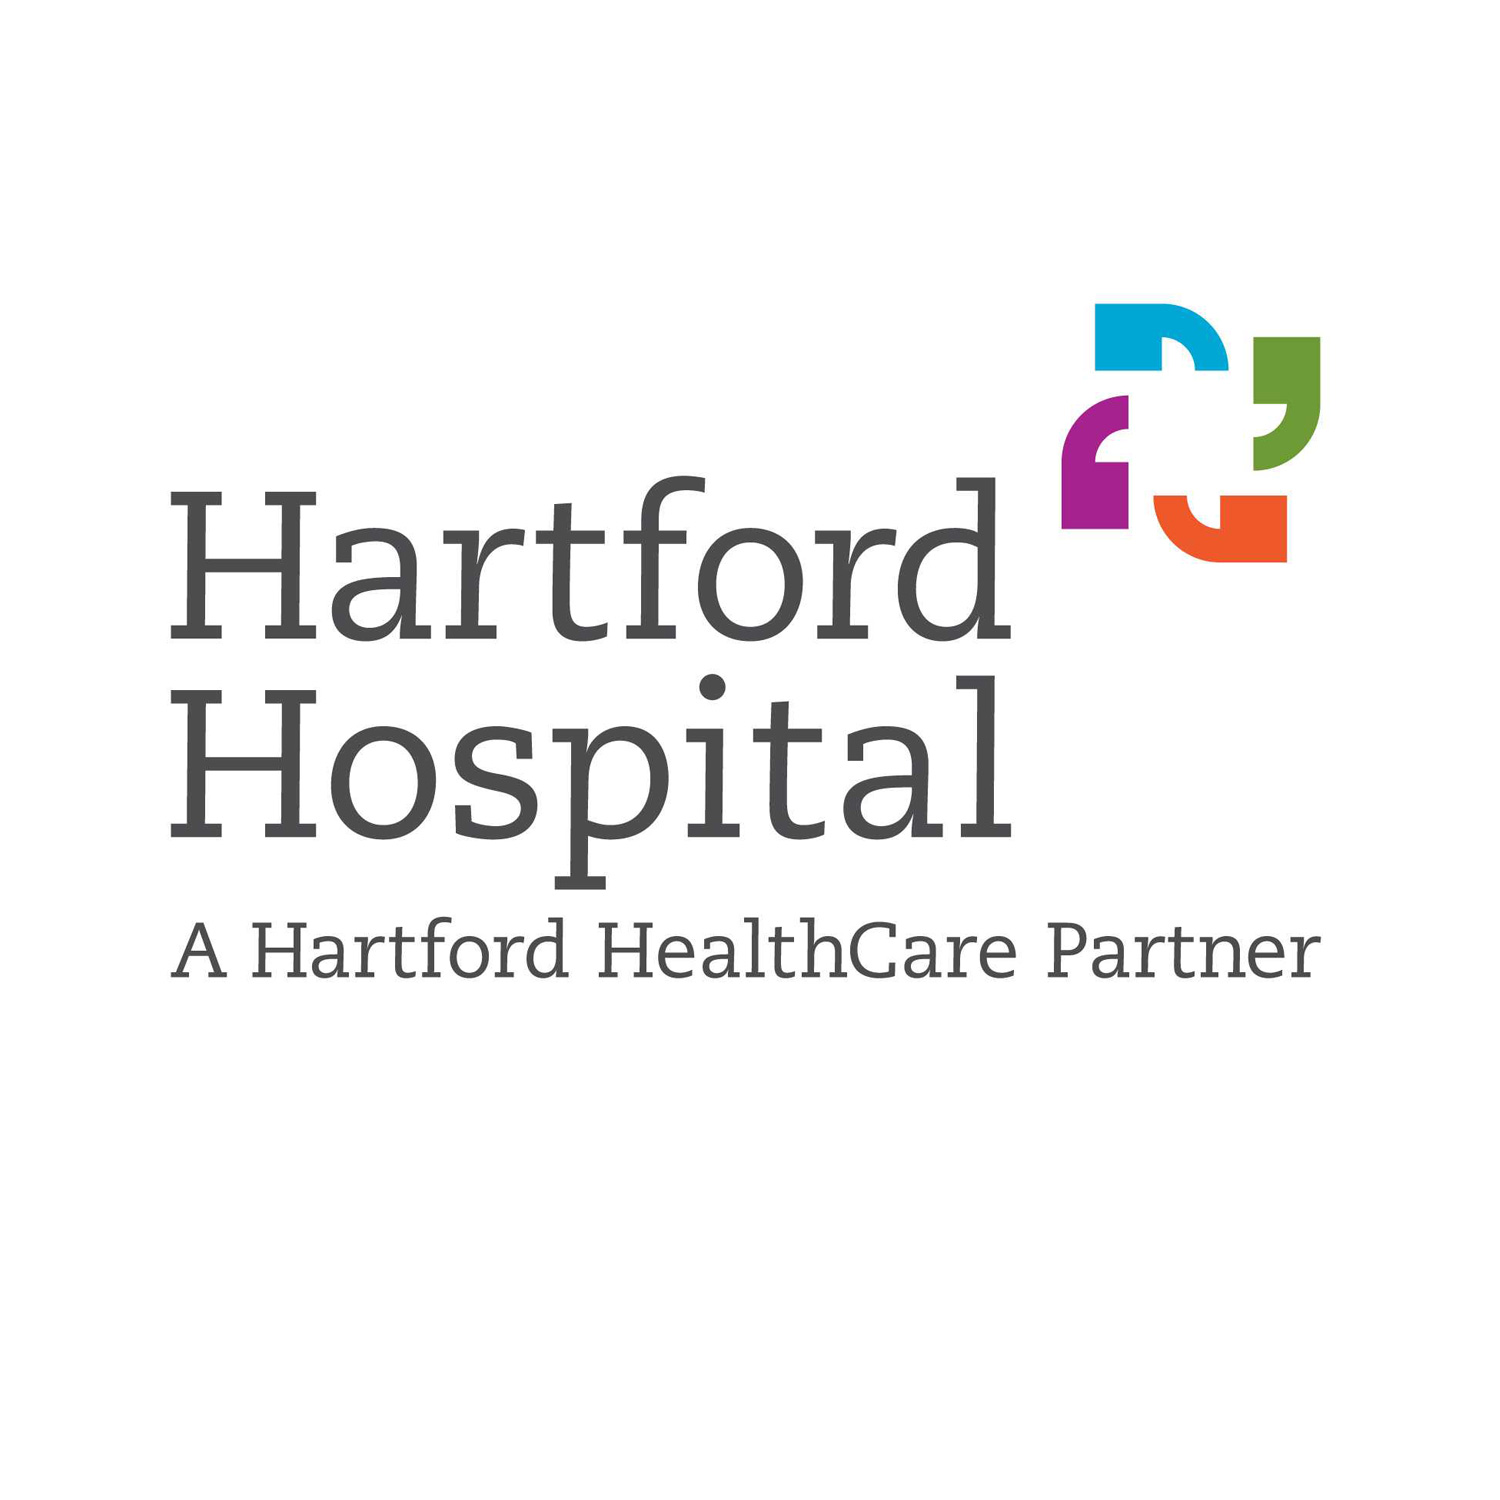 HartfordHospital.jpg